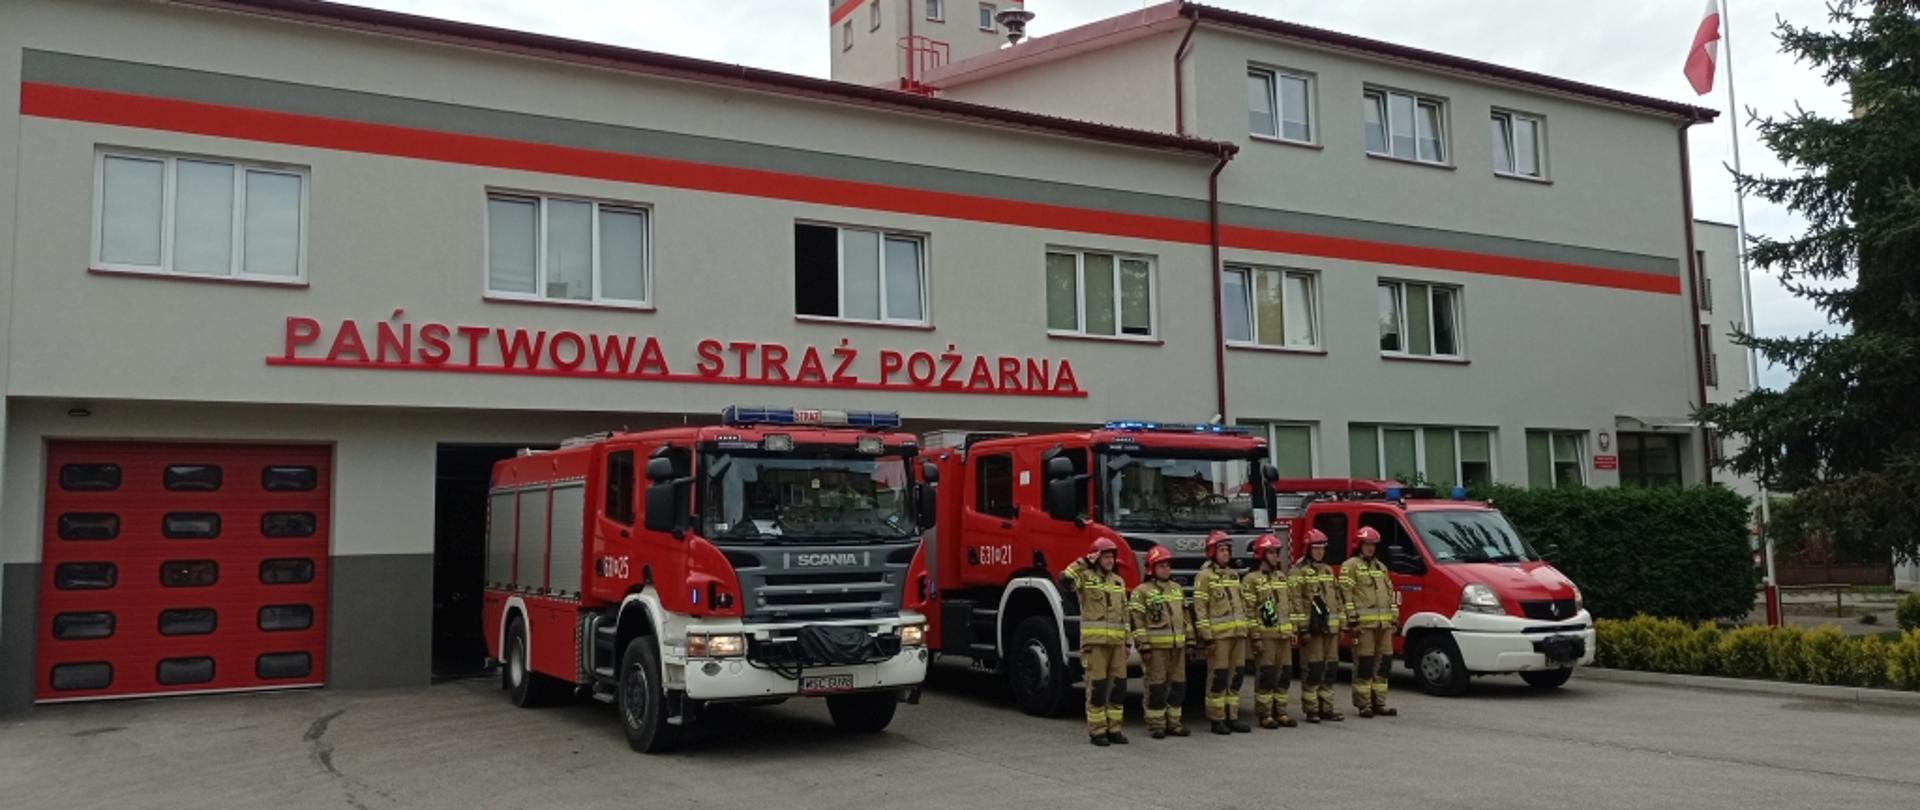 Na zdjęciu widoczny budynek Komendy Powiatowej PSP w Sochaczewie. Przed garaże wyjechały trzy samochody pożarnicze, przed którymi w szeregu stoją strażacy w ubraniach specjalnych i hełmach. Dowódca oddaje honor.